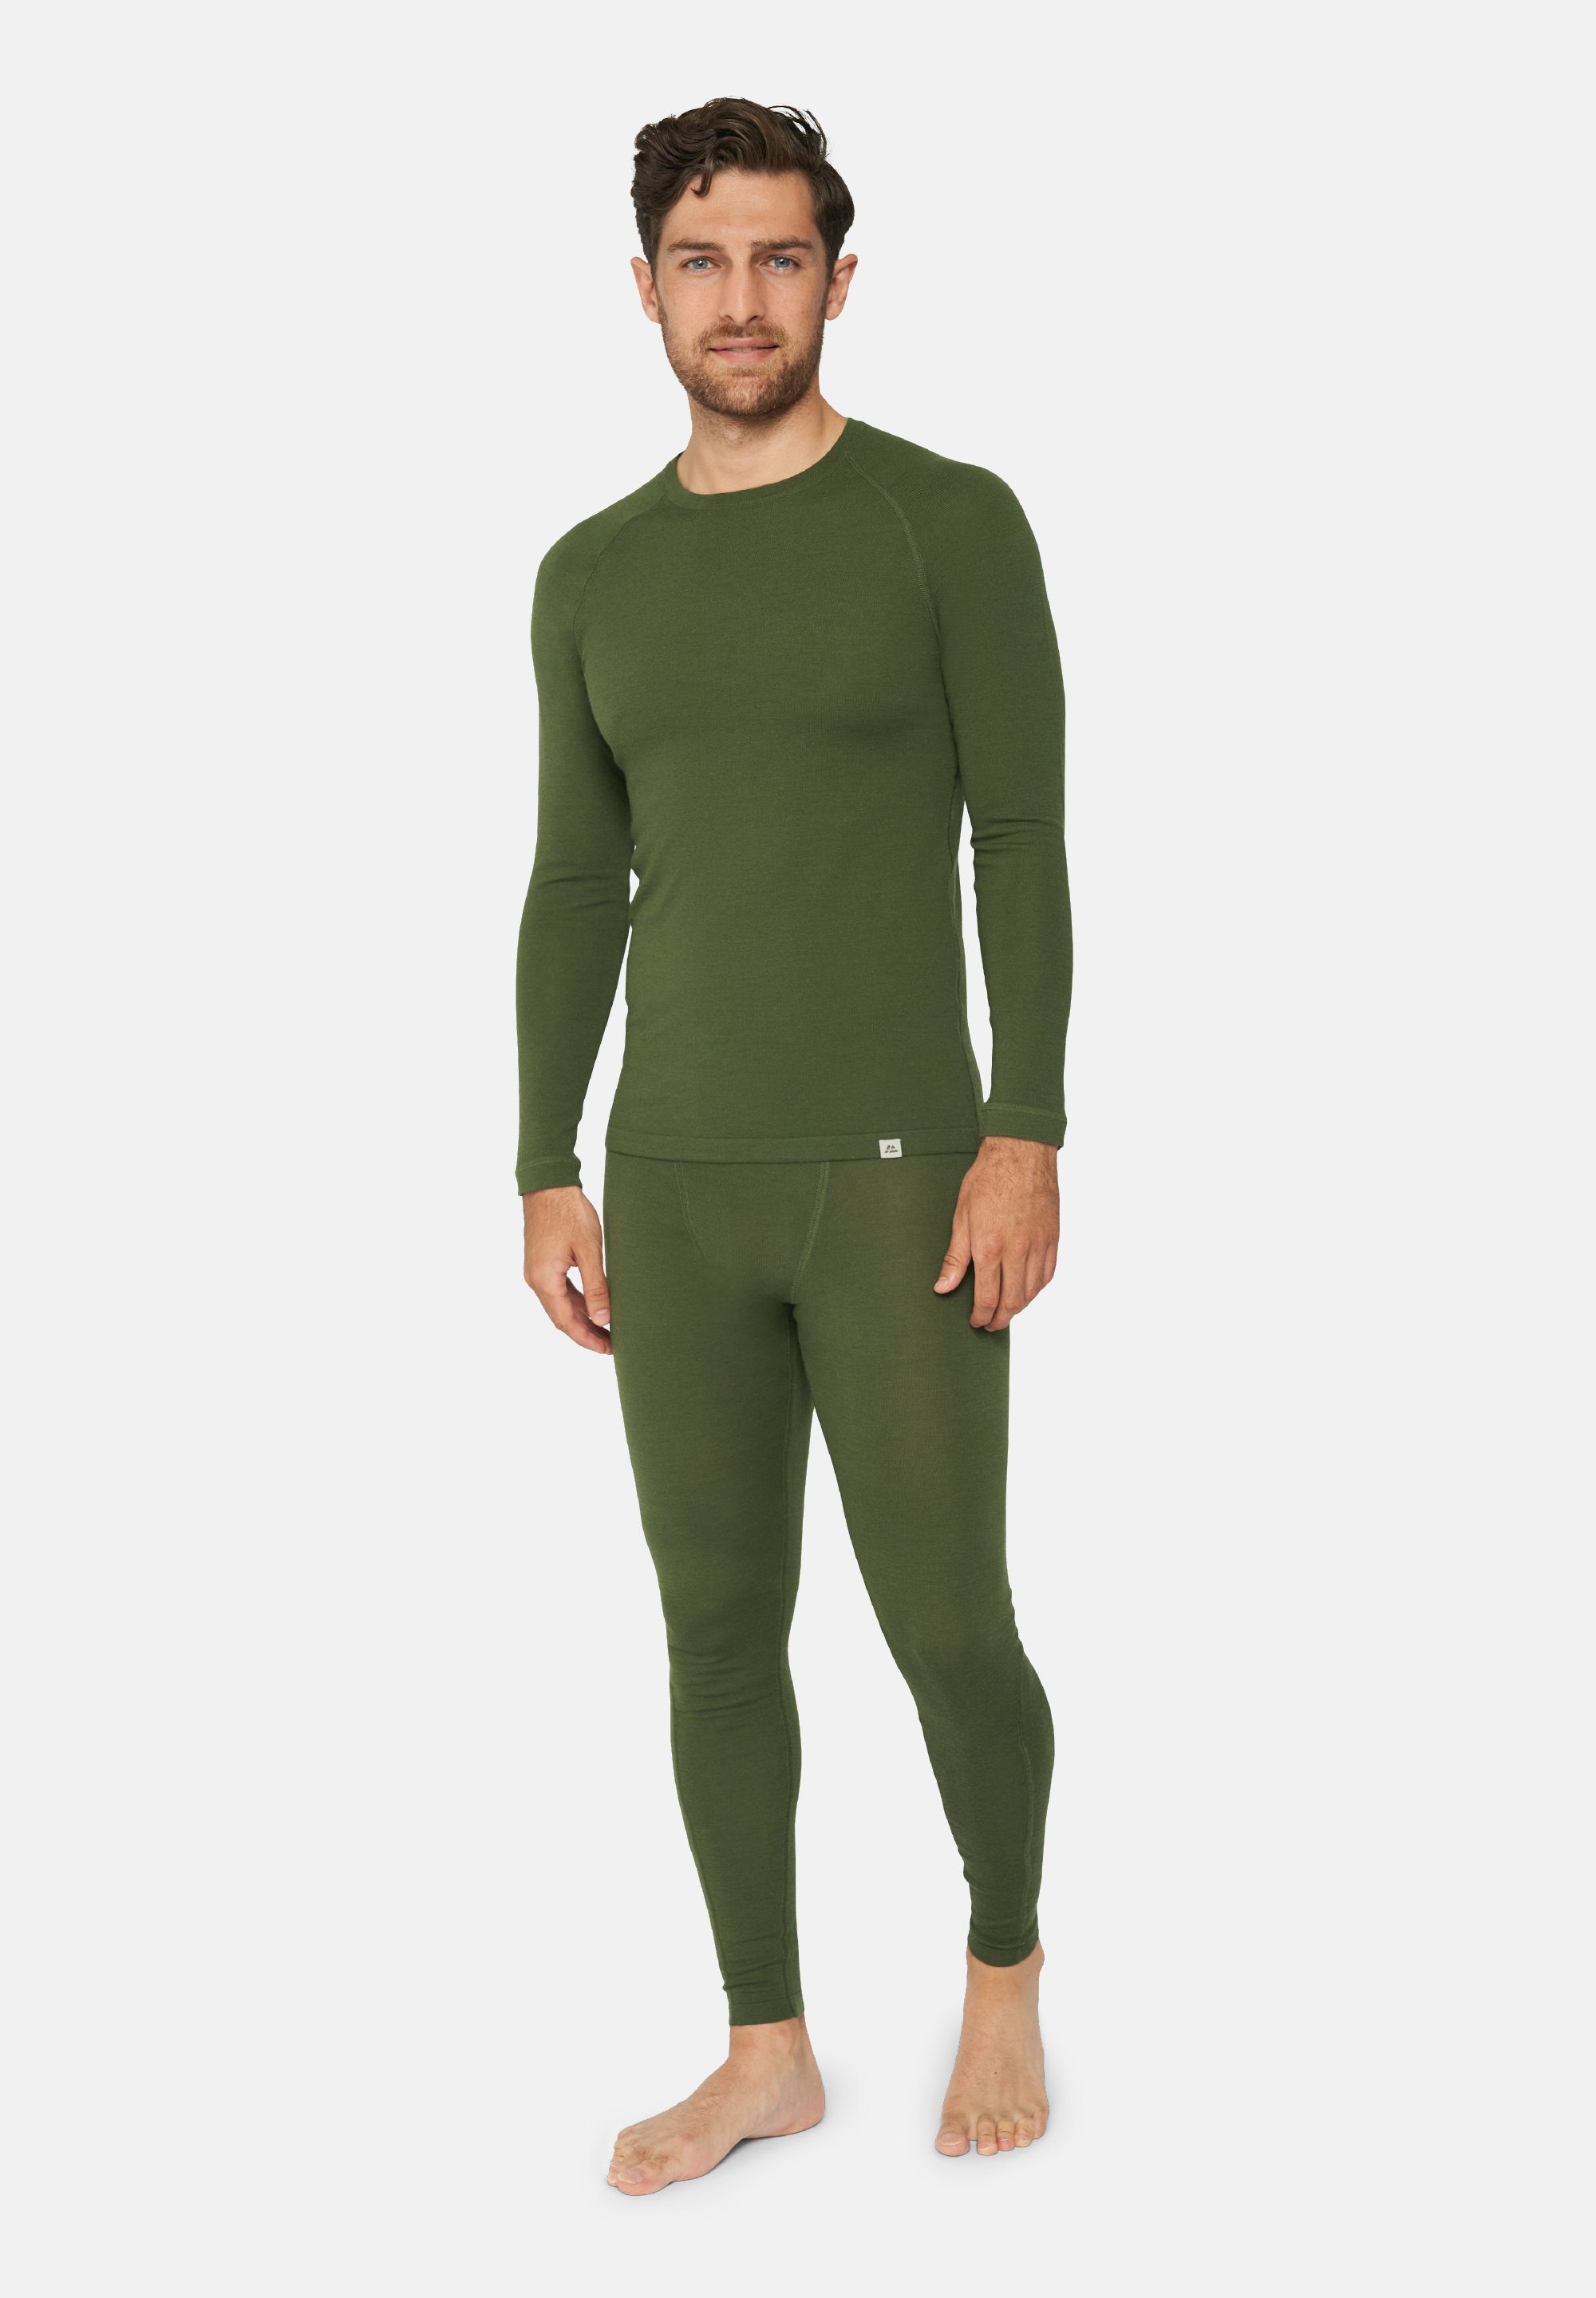 Temperaturregulierend & Langarm Shirt ENDURANCE Set DANISH Thermo-Unterwäsche Thermounterhemd Hose, green für Herren Merino